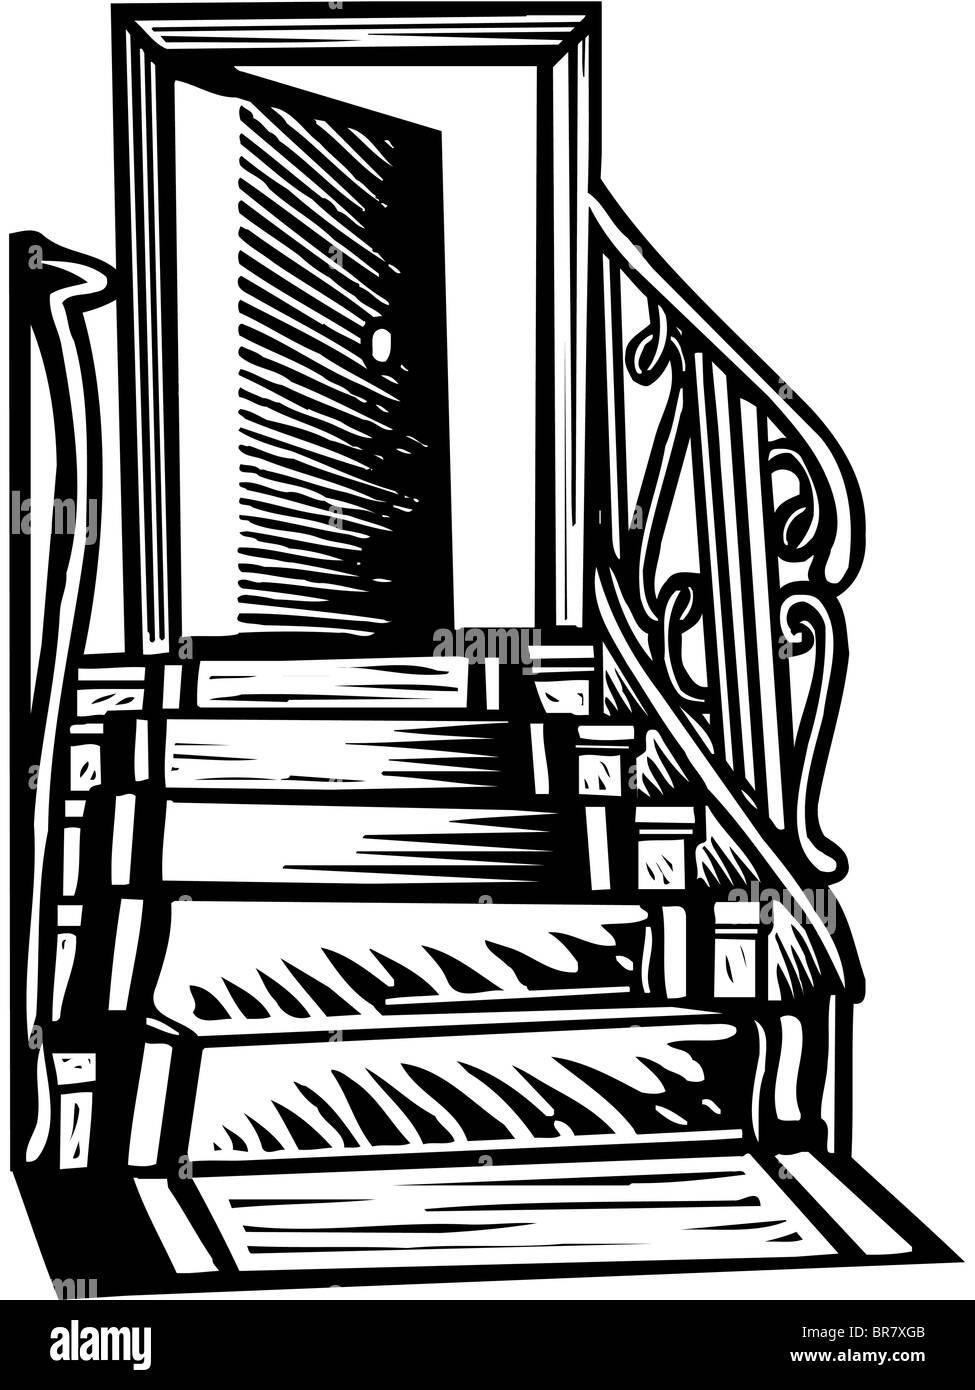 Une photo en noir et blanc d'un tapis qui ont précédé l'escalier d'une porte ouverte Banque D'Images